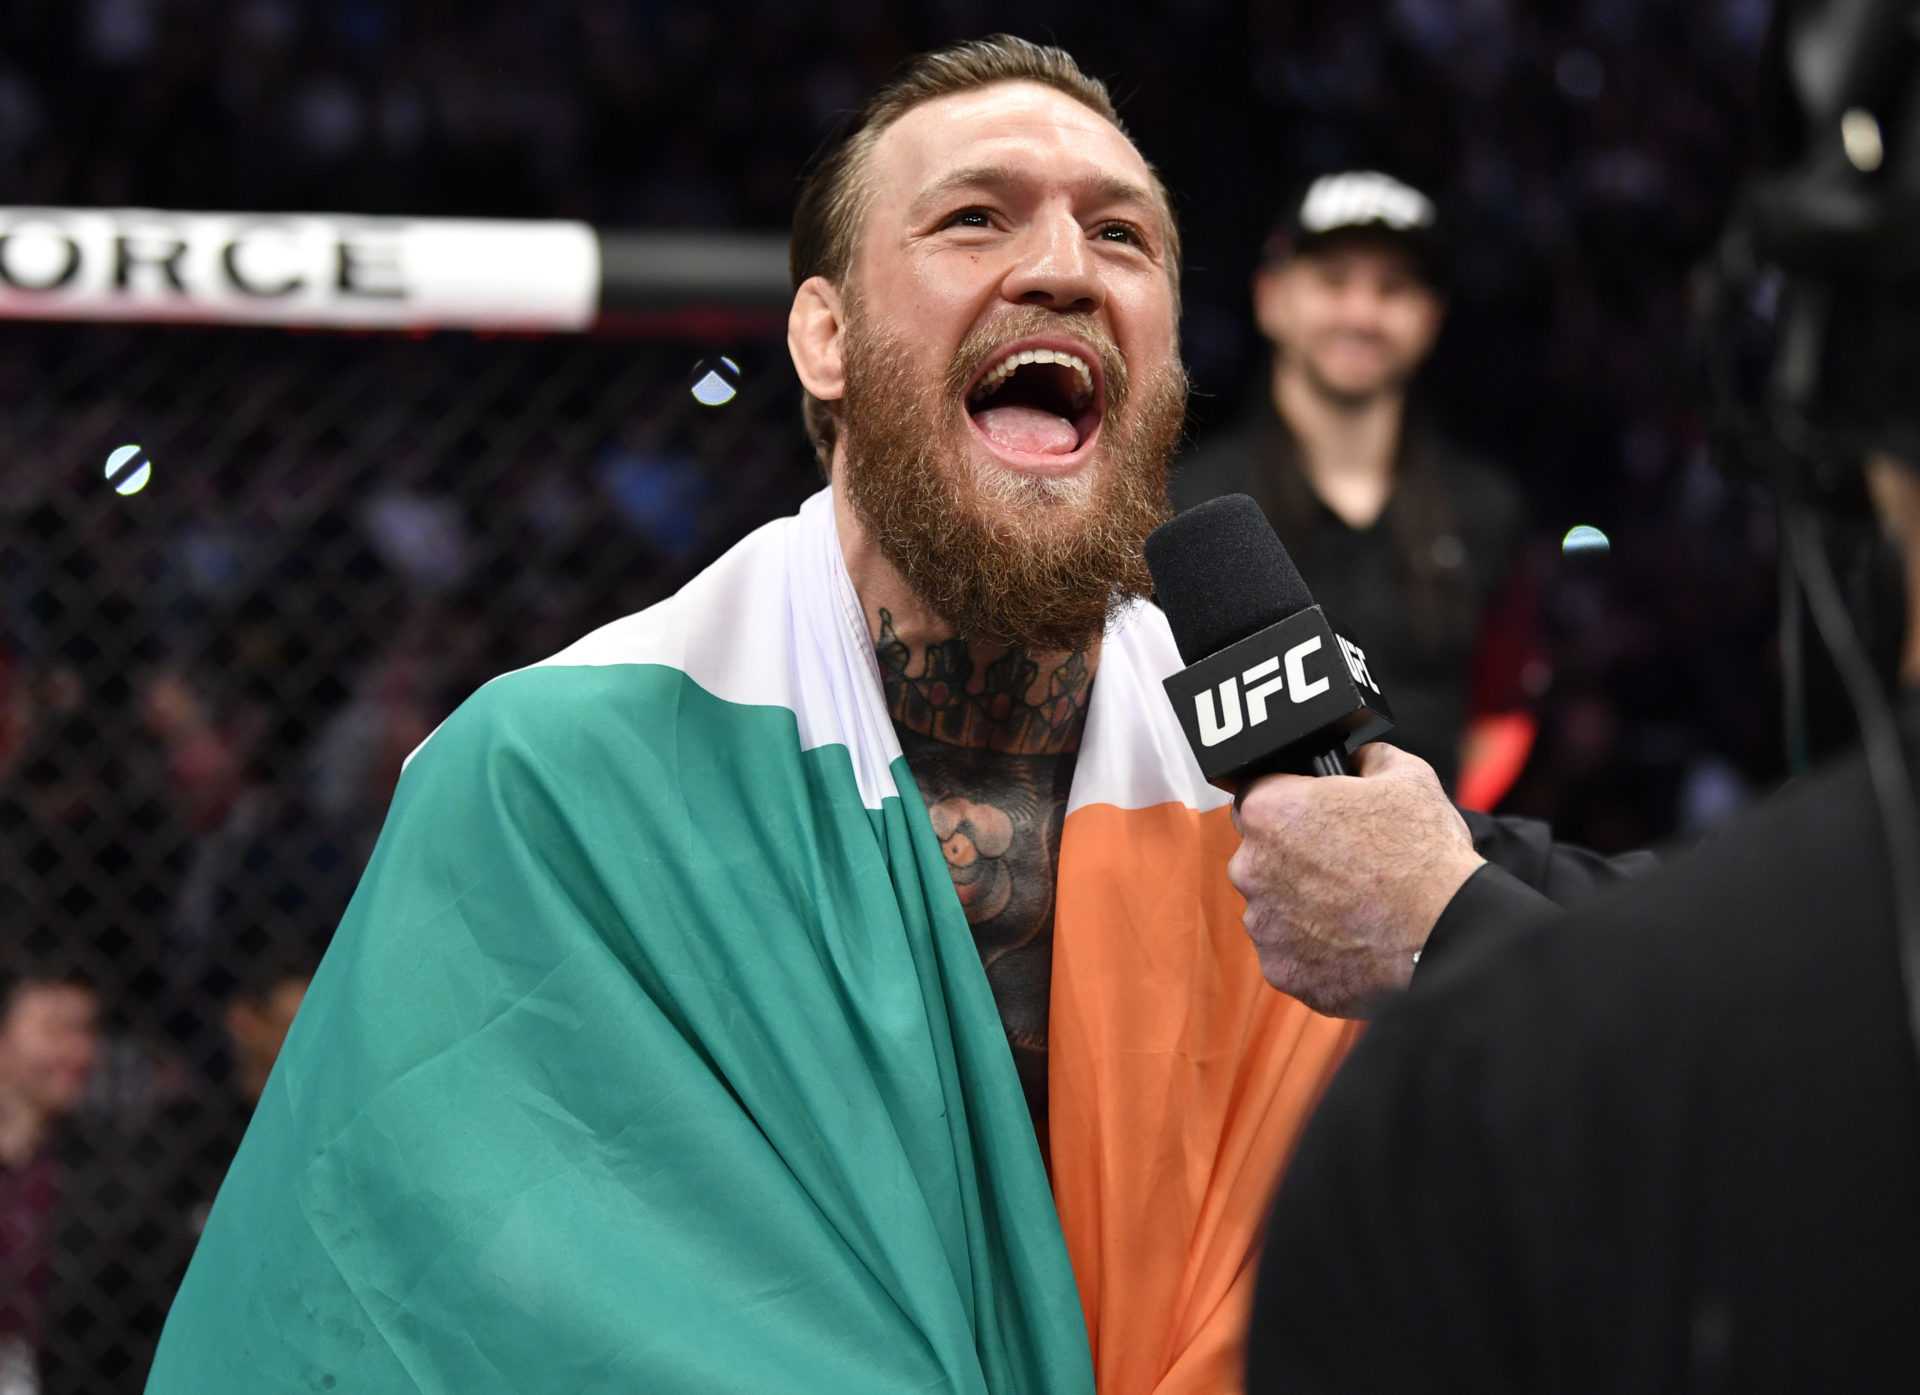 OFFICIEL: Conor McGregor fait son retour à l'UFC 257 contre Dustin Poirier